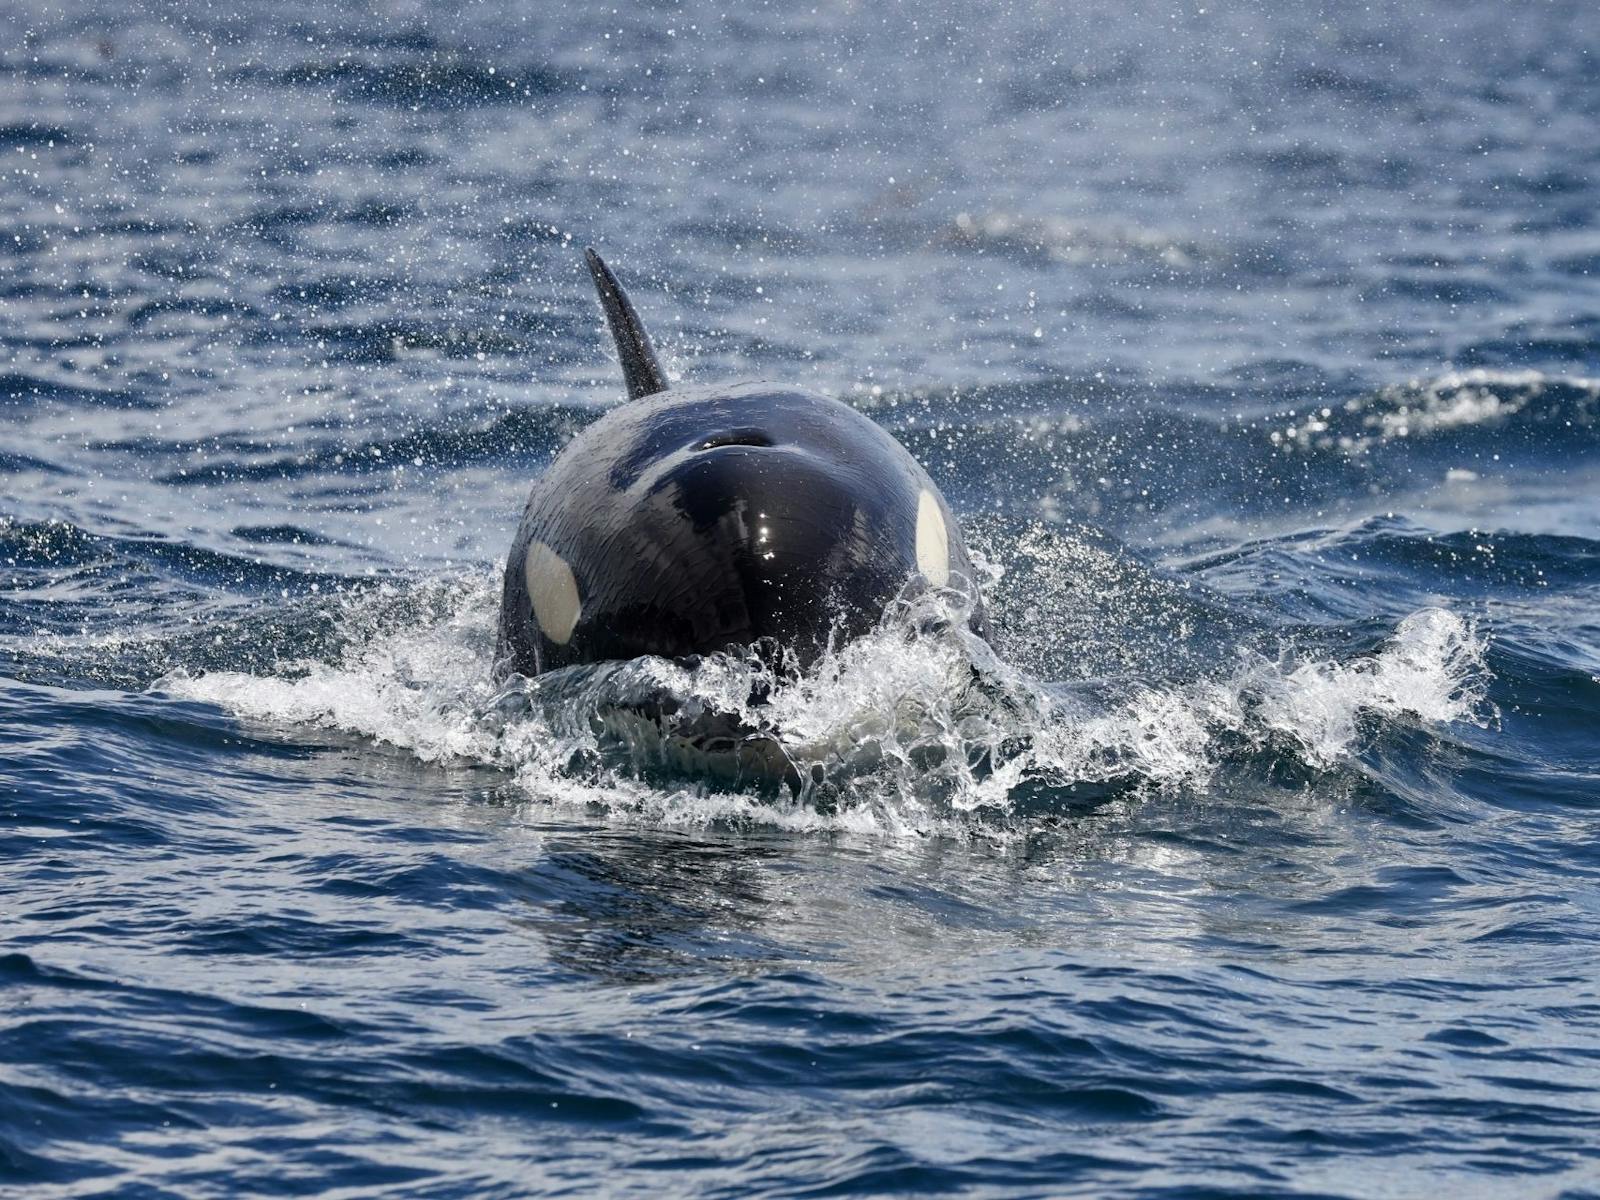 Orca off the Tasman Peninsula